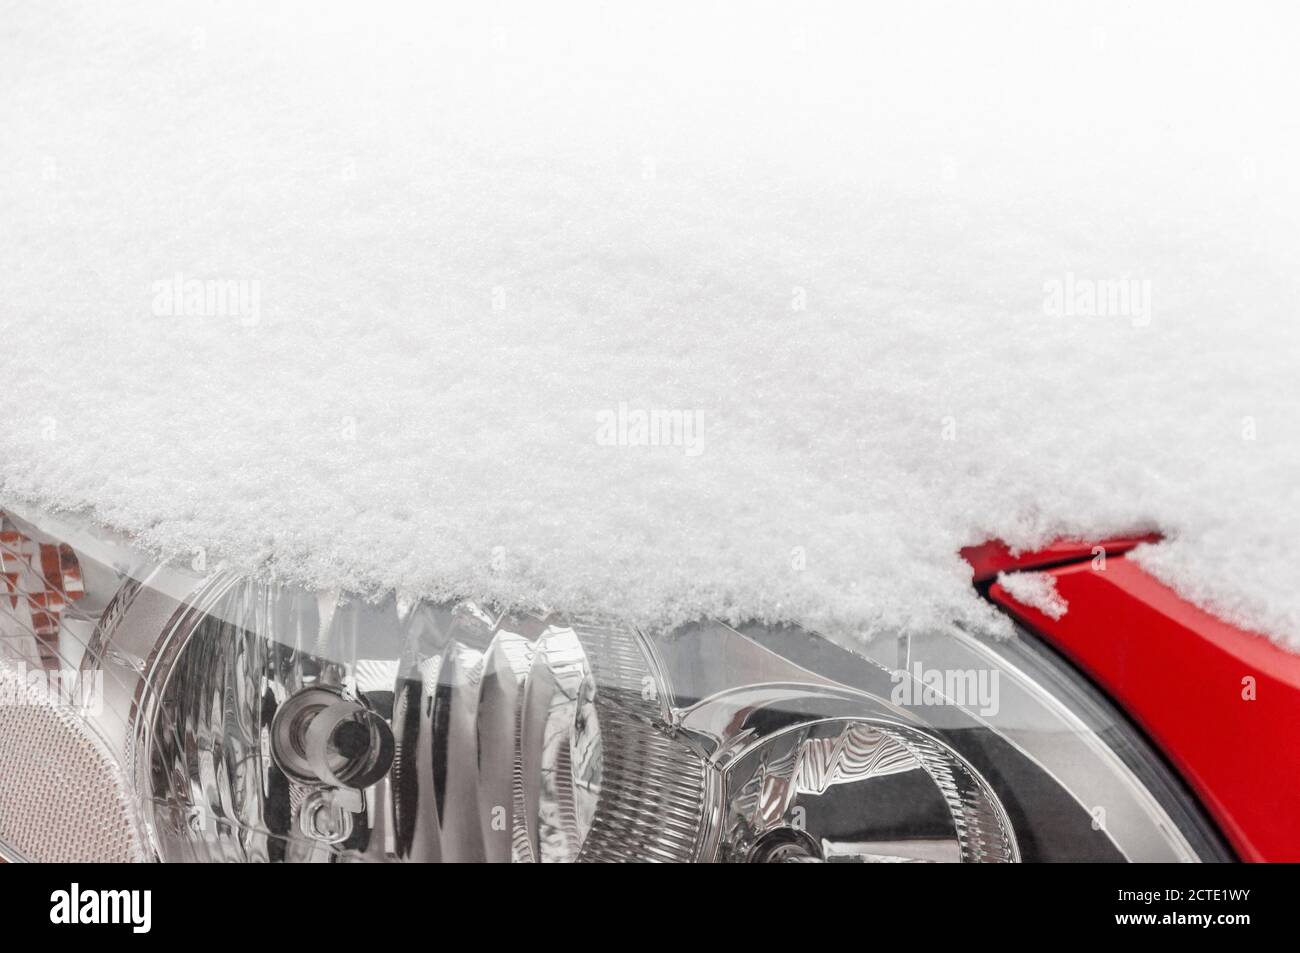 Capot et phare de voiture Volvo rouge recouverts de neige Banque D'Images